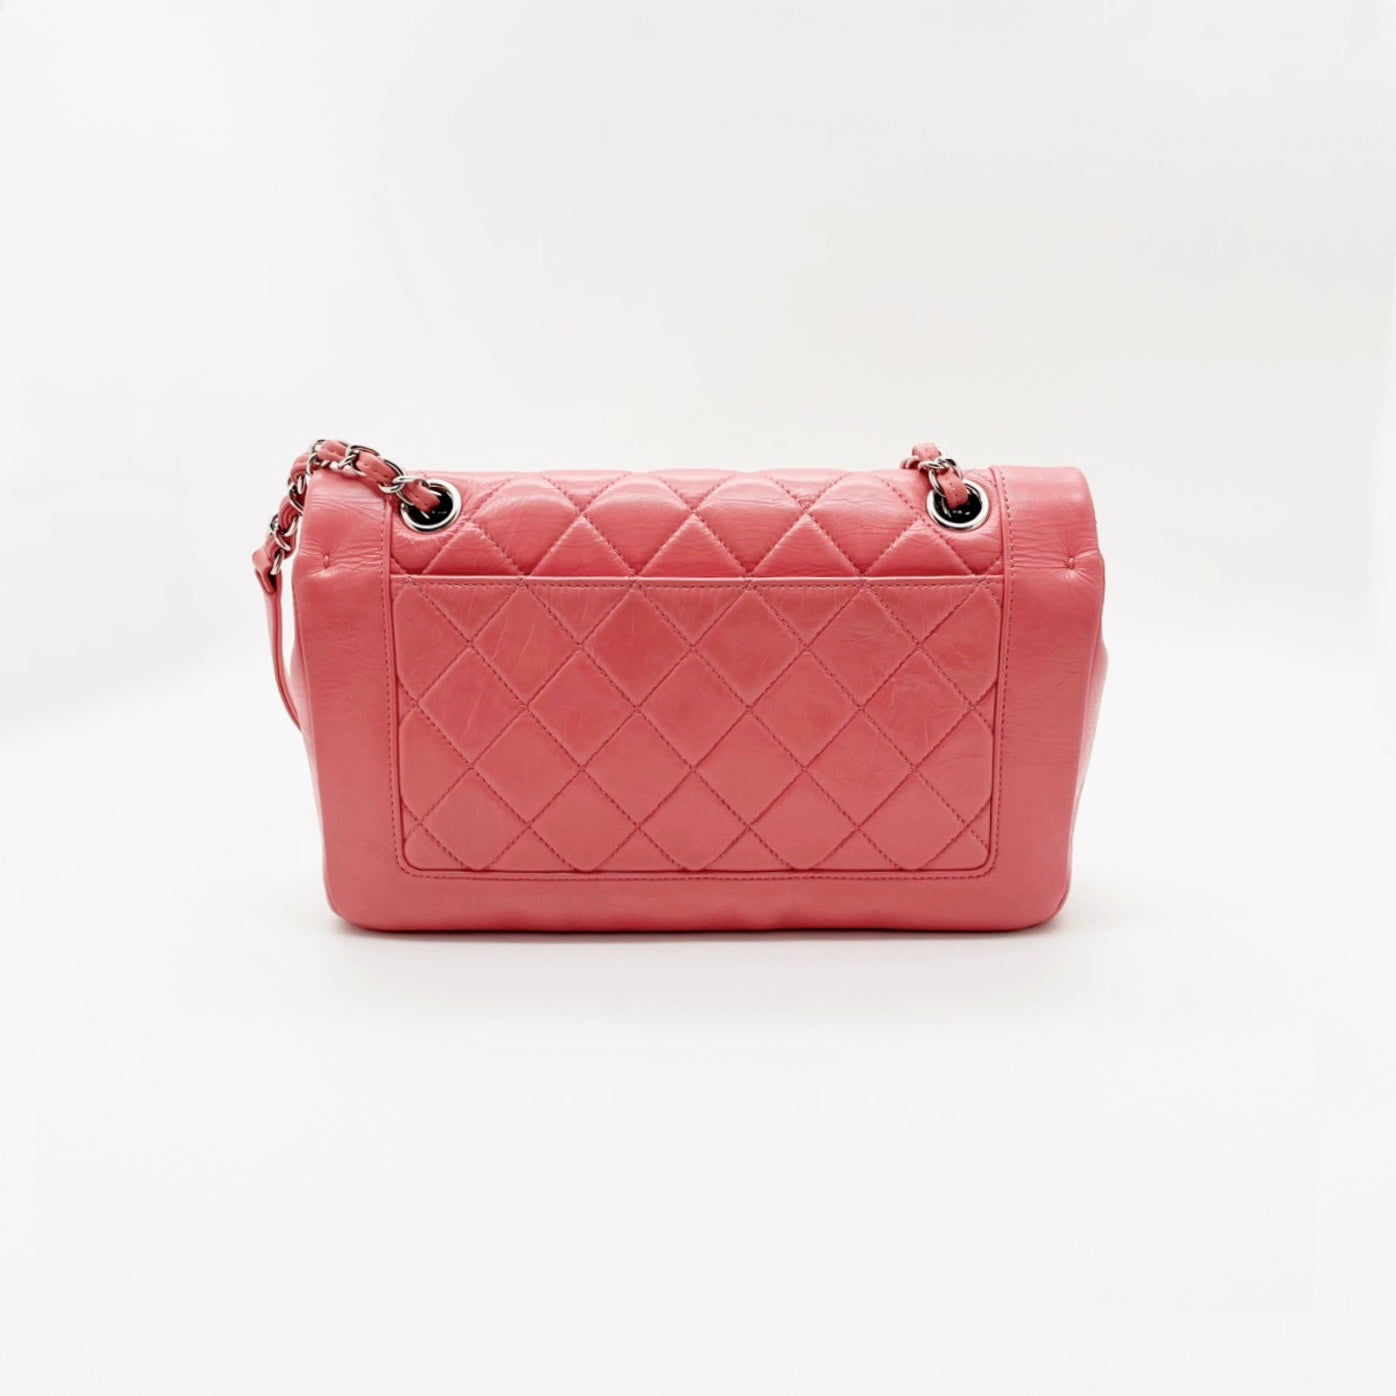 Preloved Chanel Limited Flap Bag